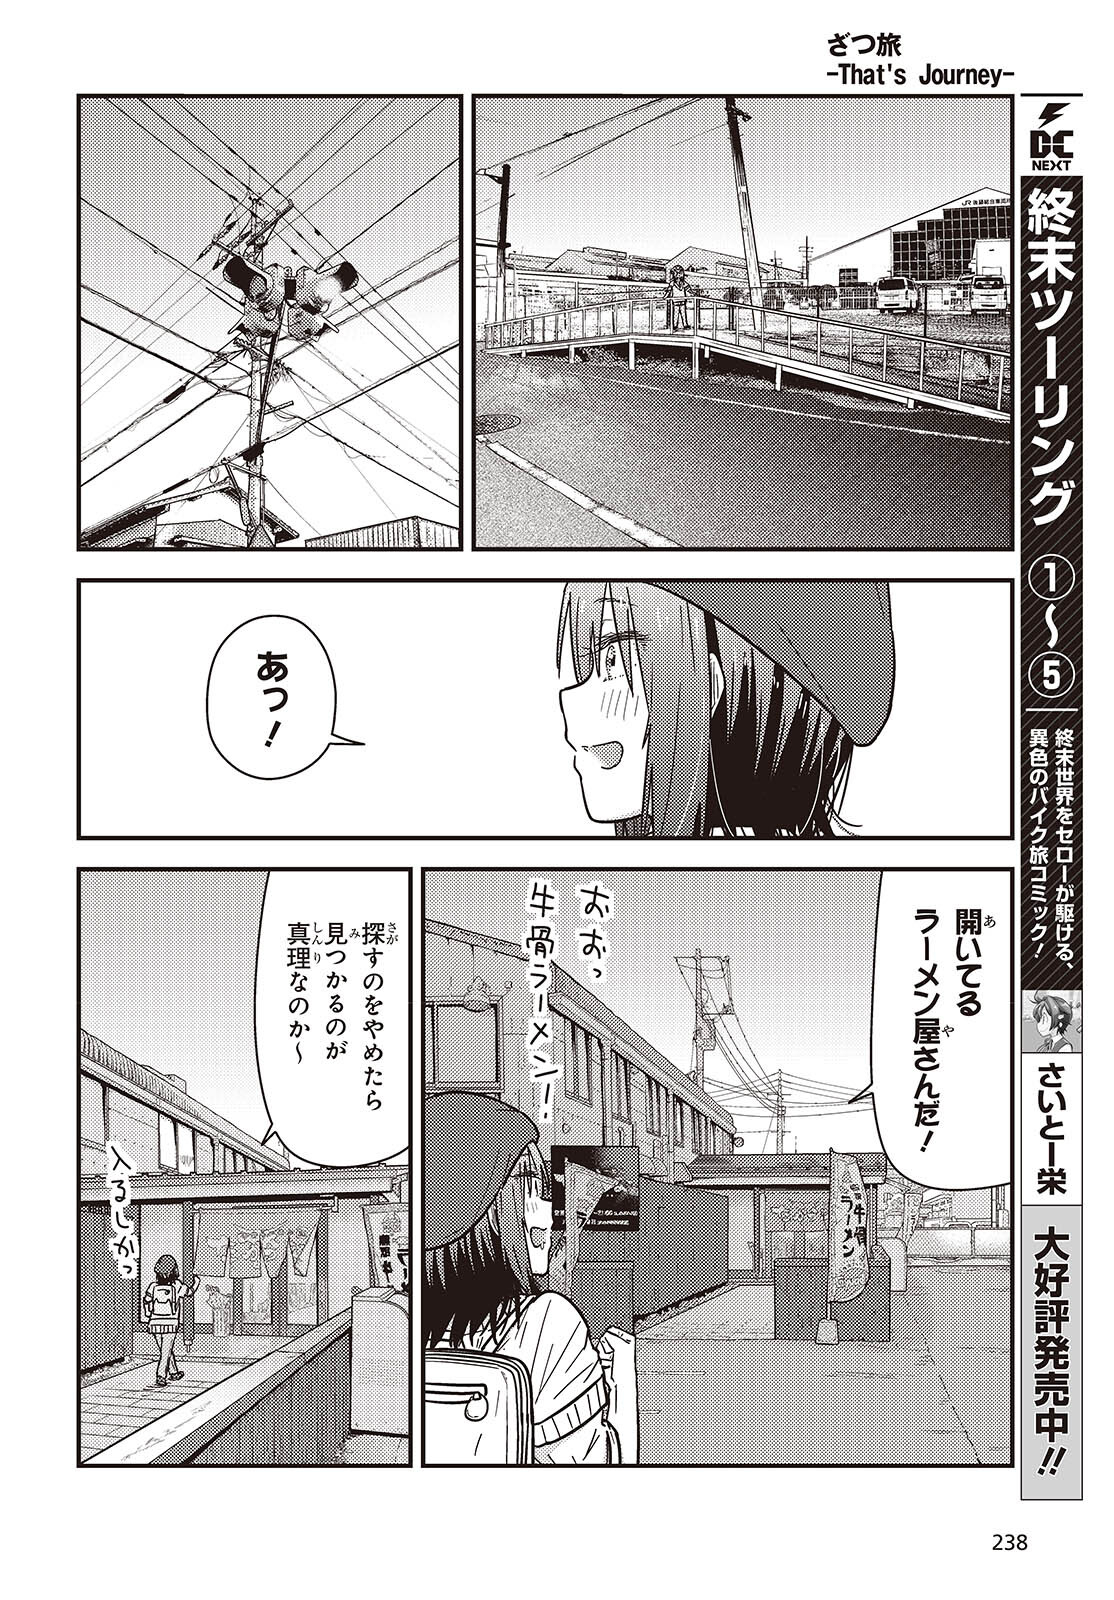 ざつ旅-That's Journey- 第37.6話 - Page 14